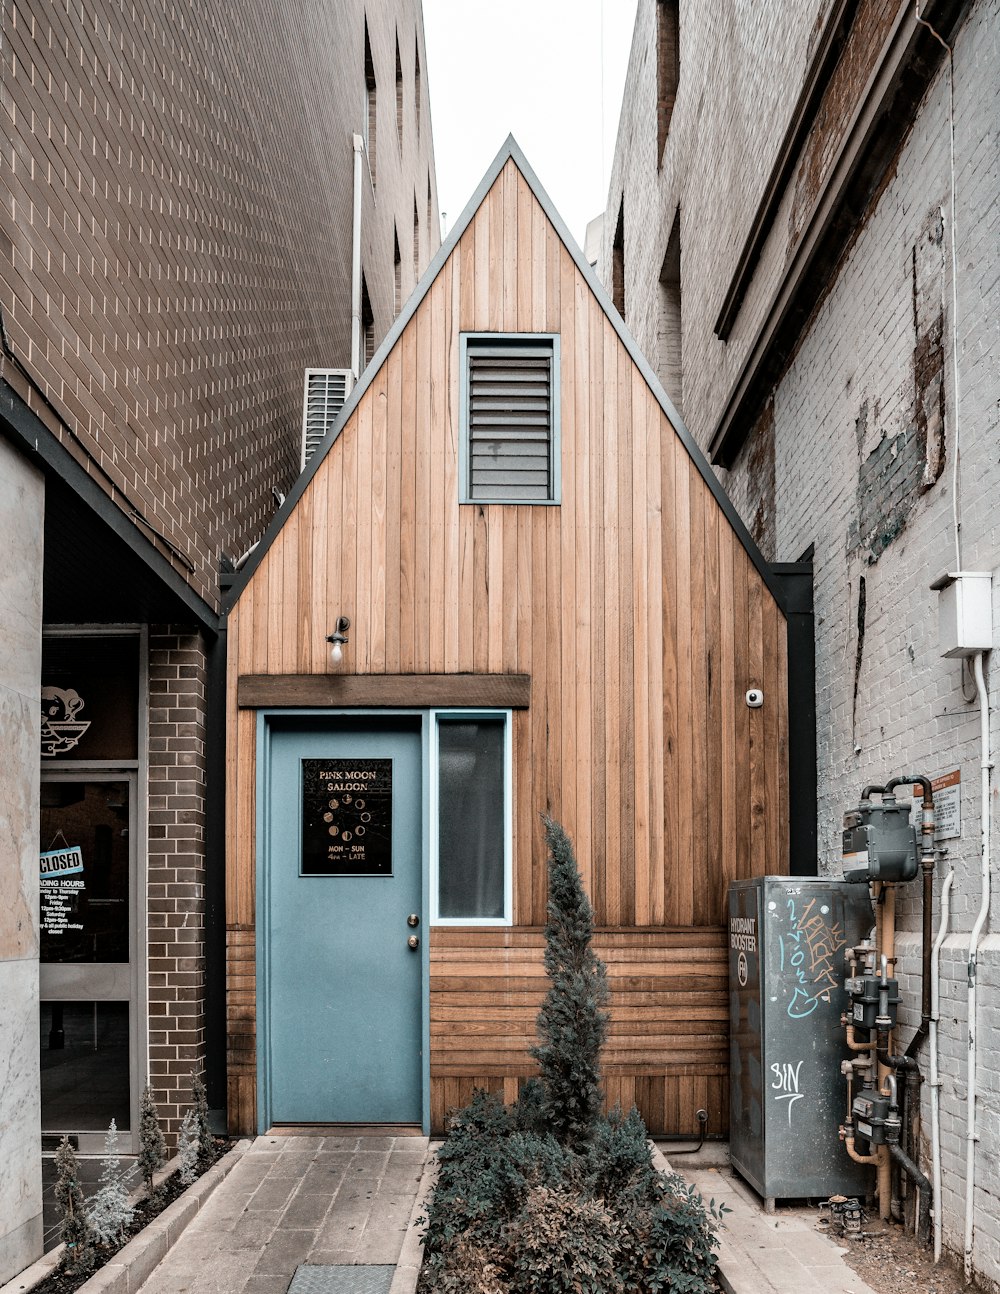 Casa de madera marrón en el callejón entre edificios